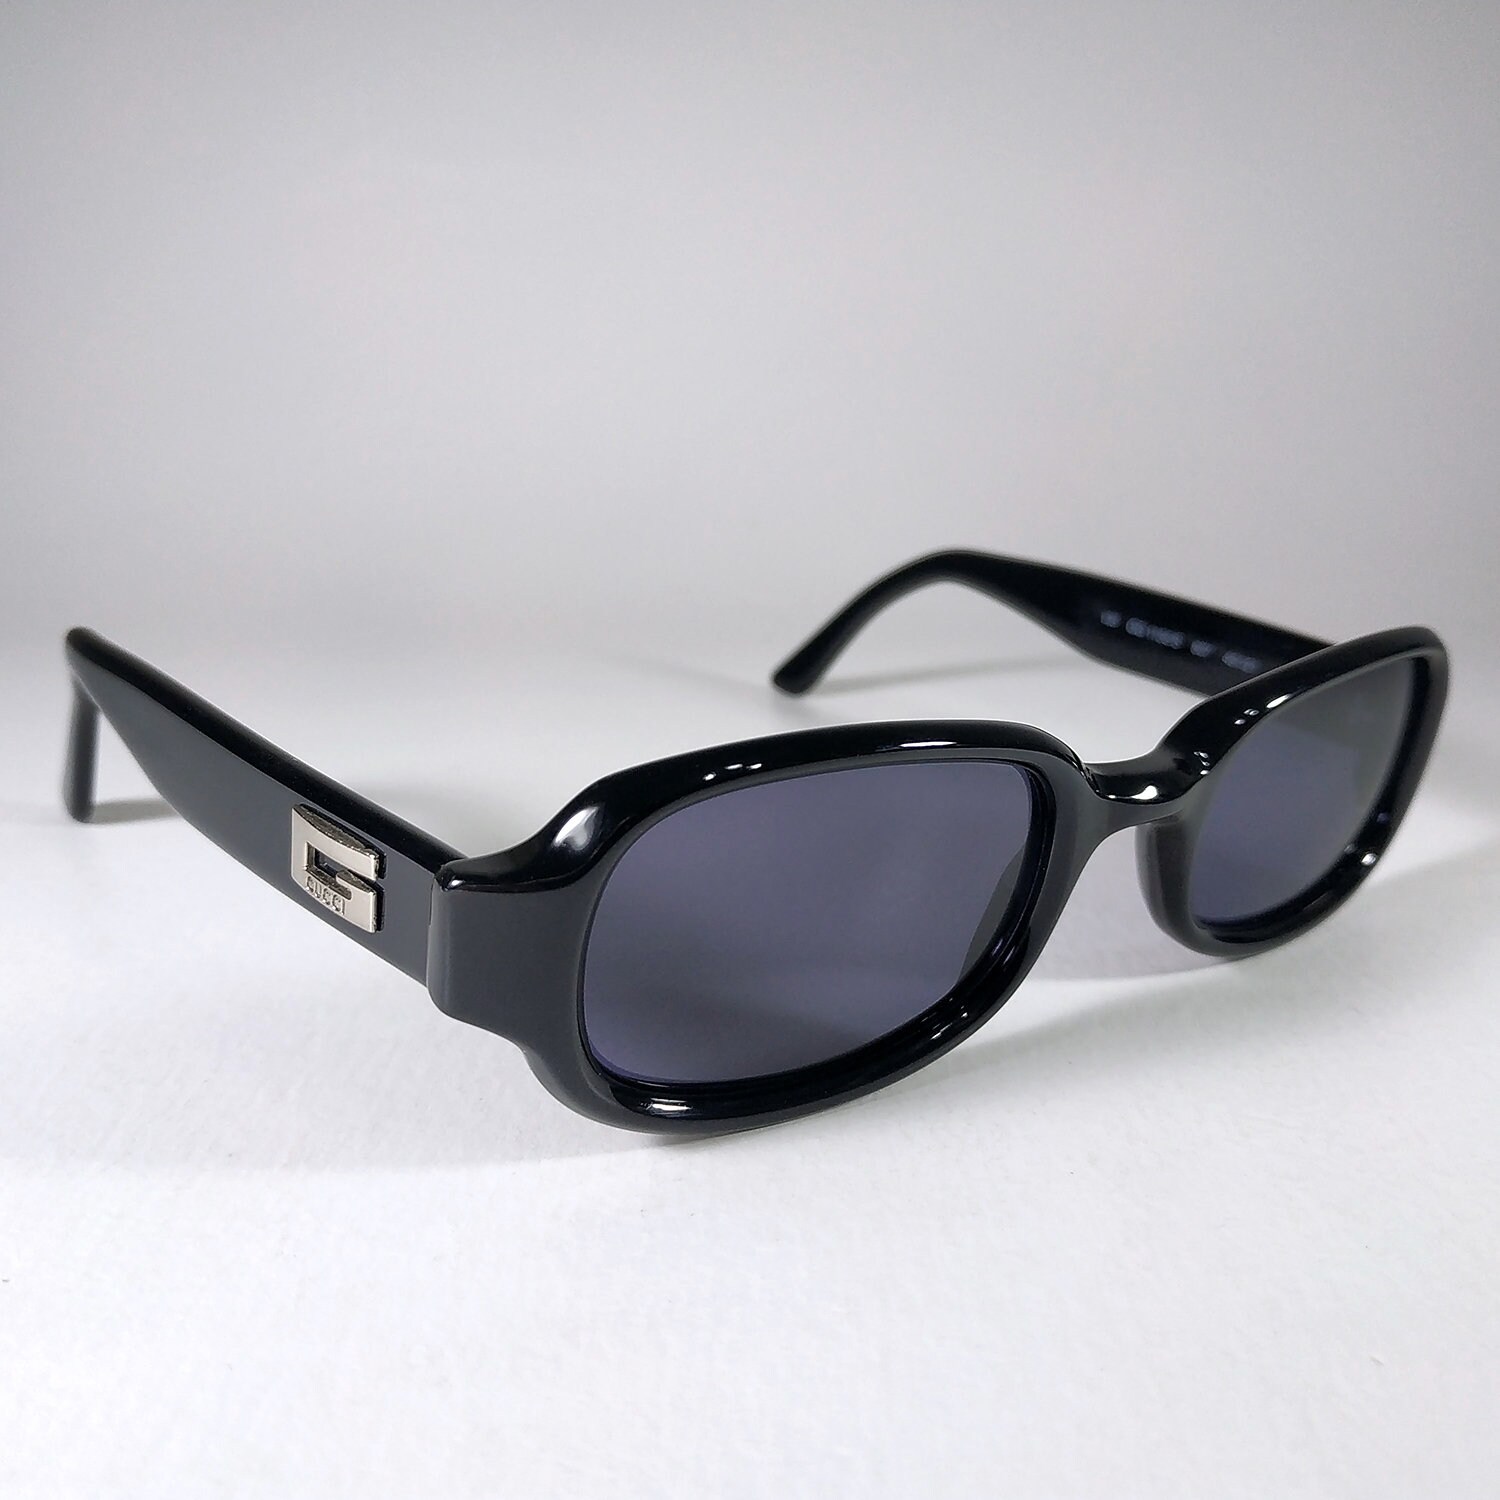 GUCCI © Sunglasses 1156/S. RARE Sunglasses 90-s. Made in - Etsy